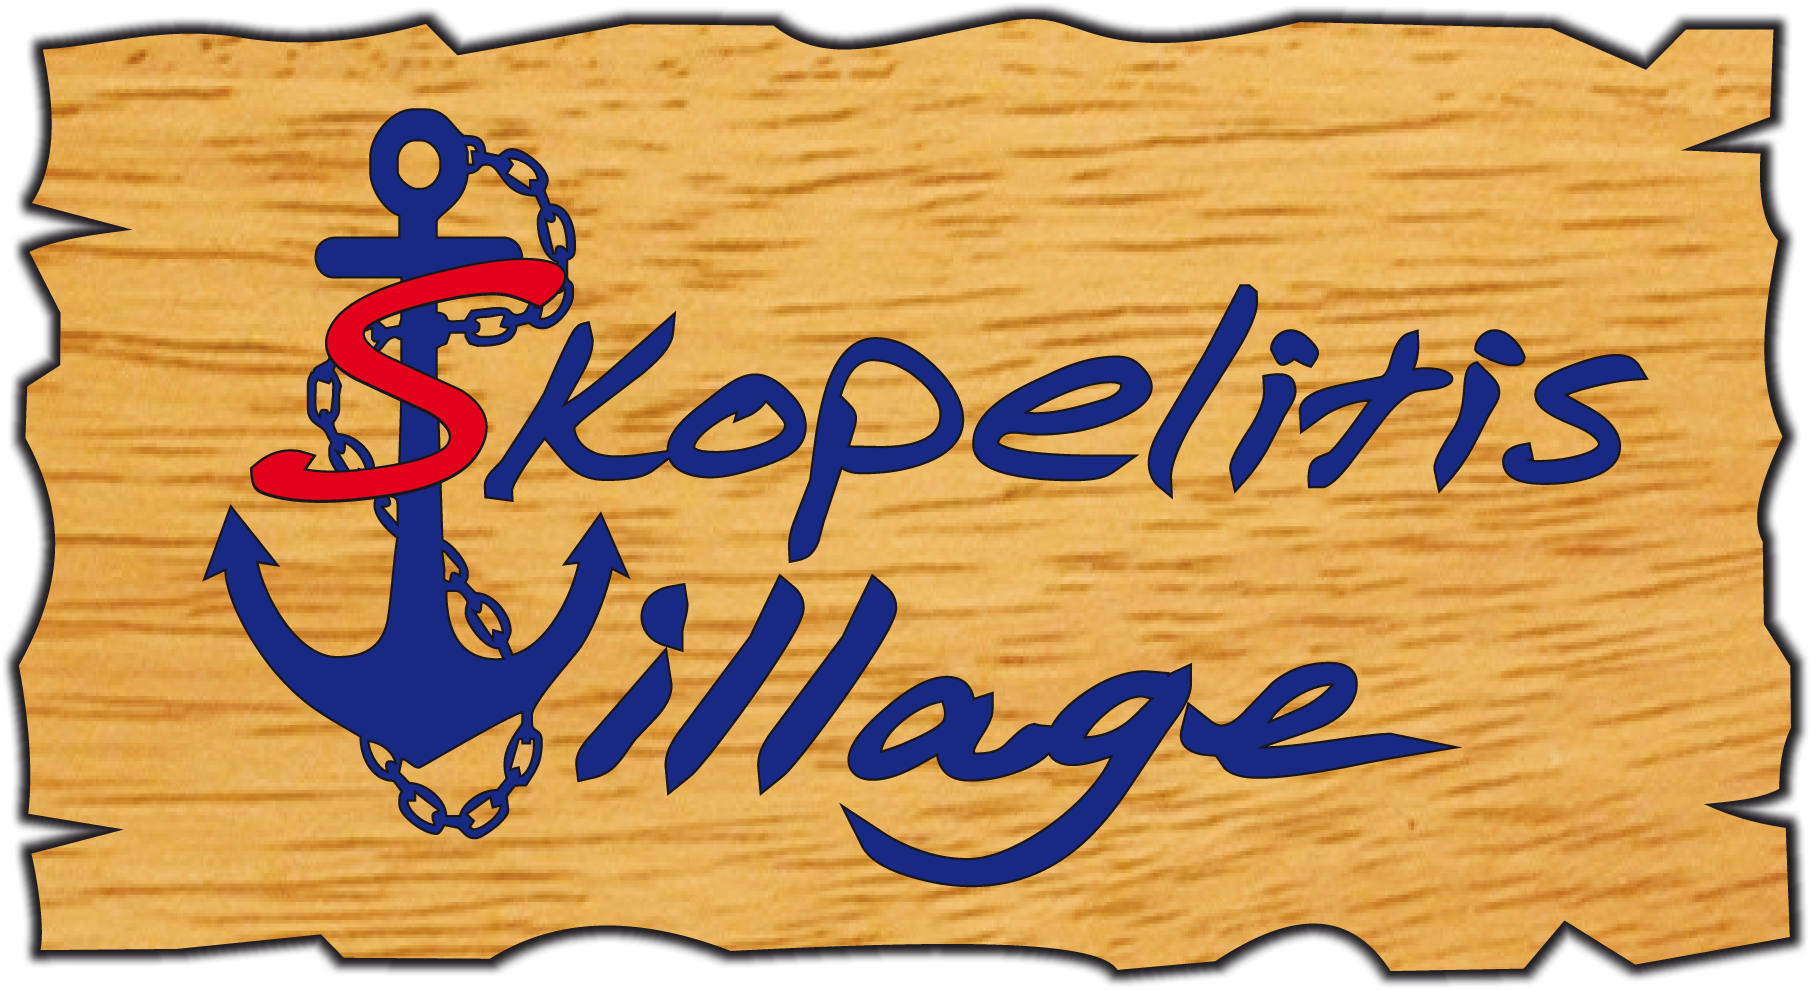 Skopelitis logo